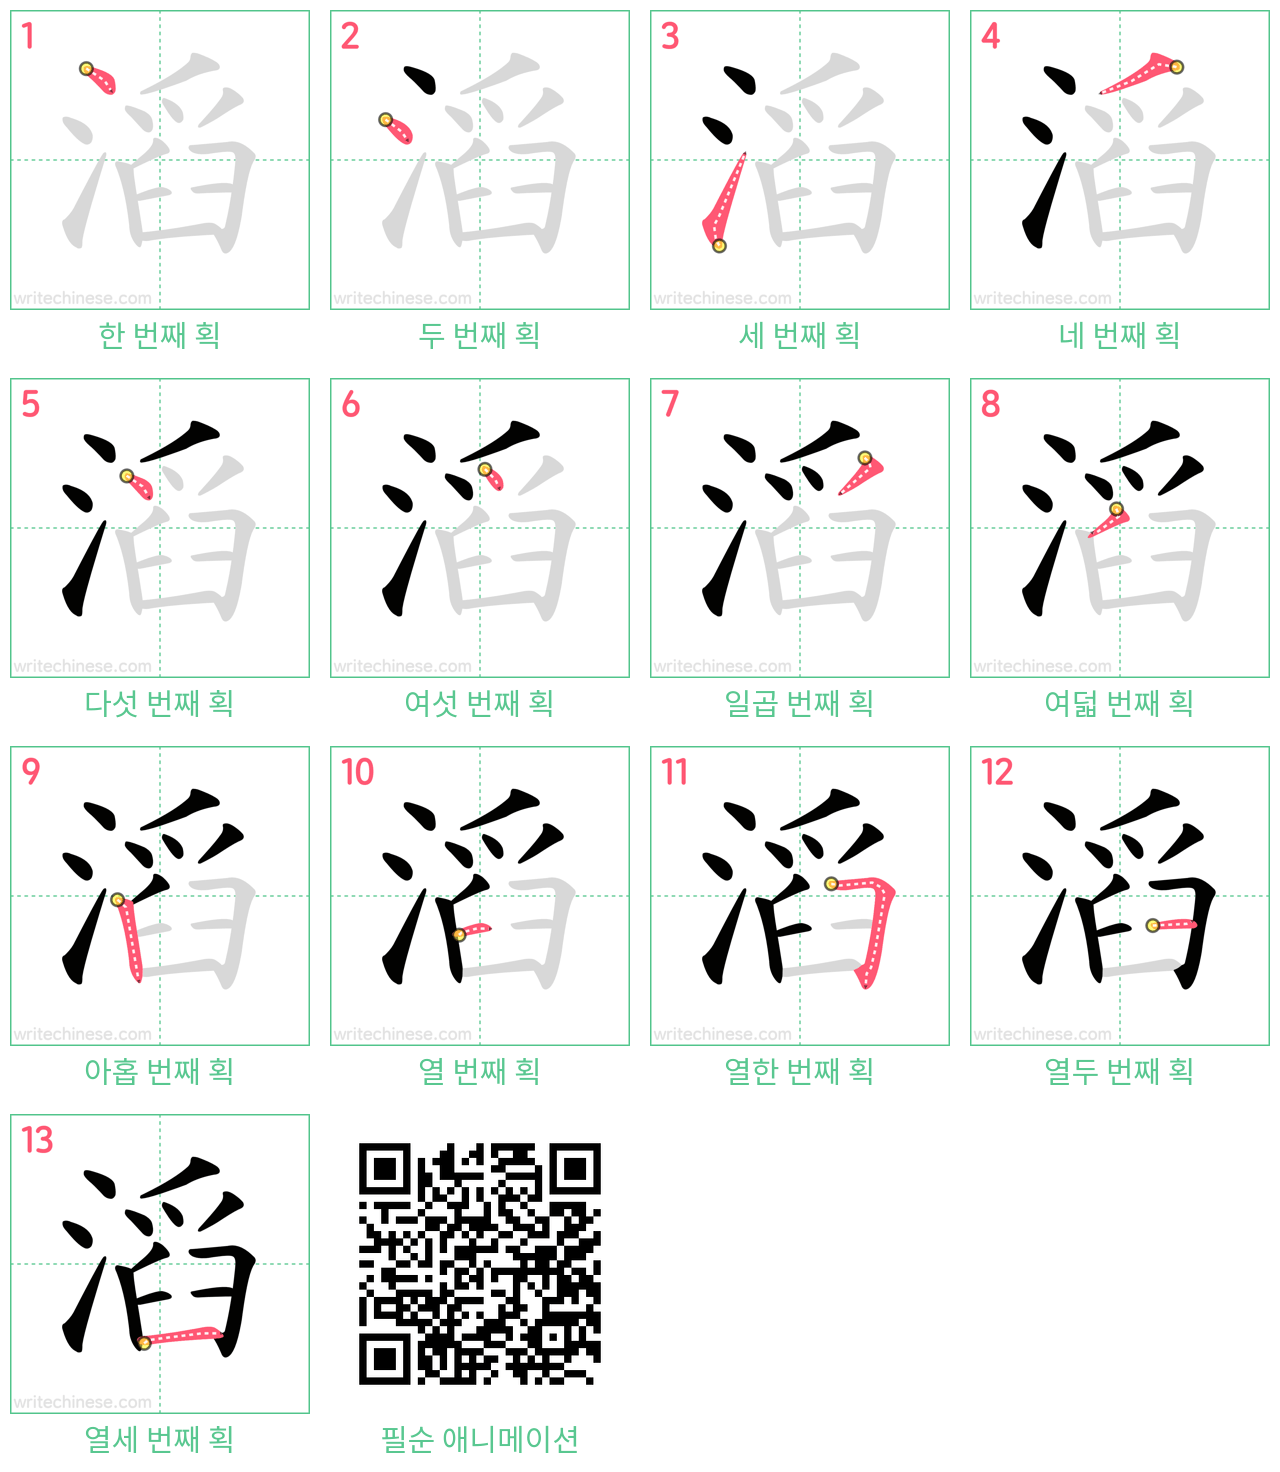 滔 step-by-step stroke order diagrams